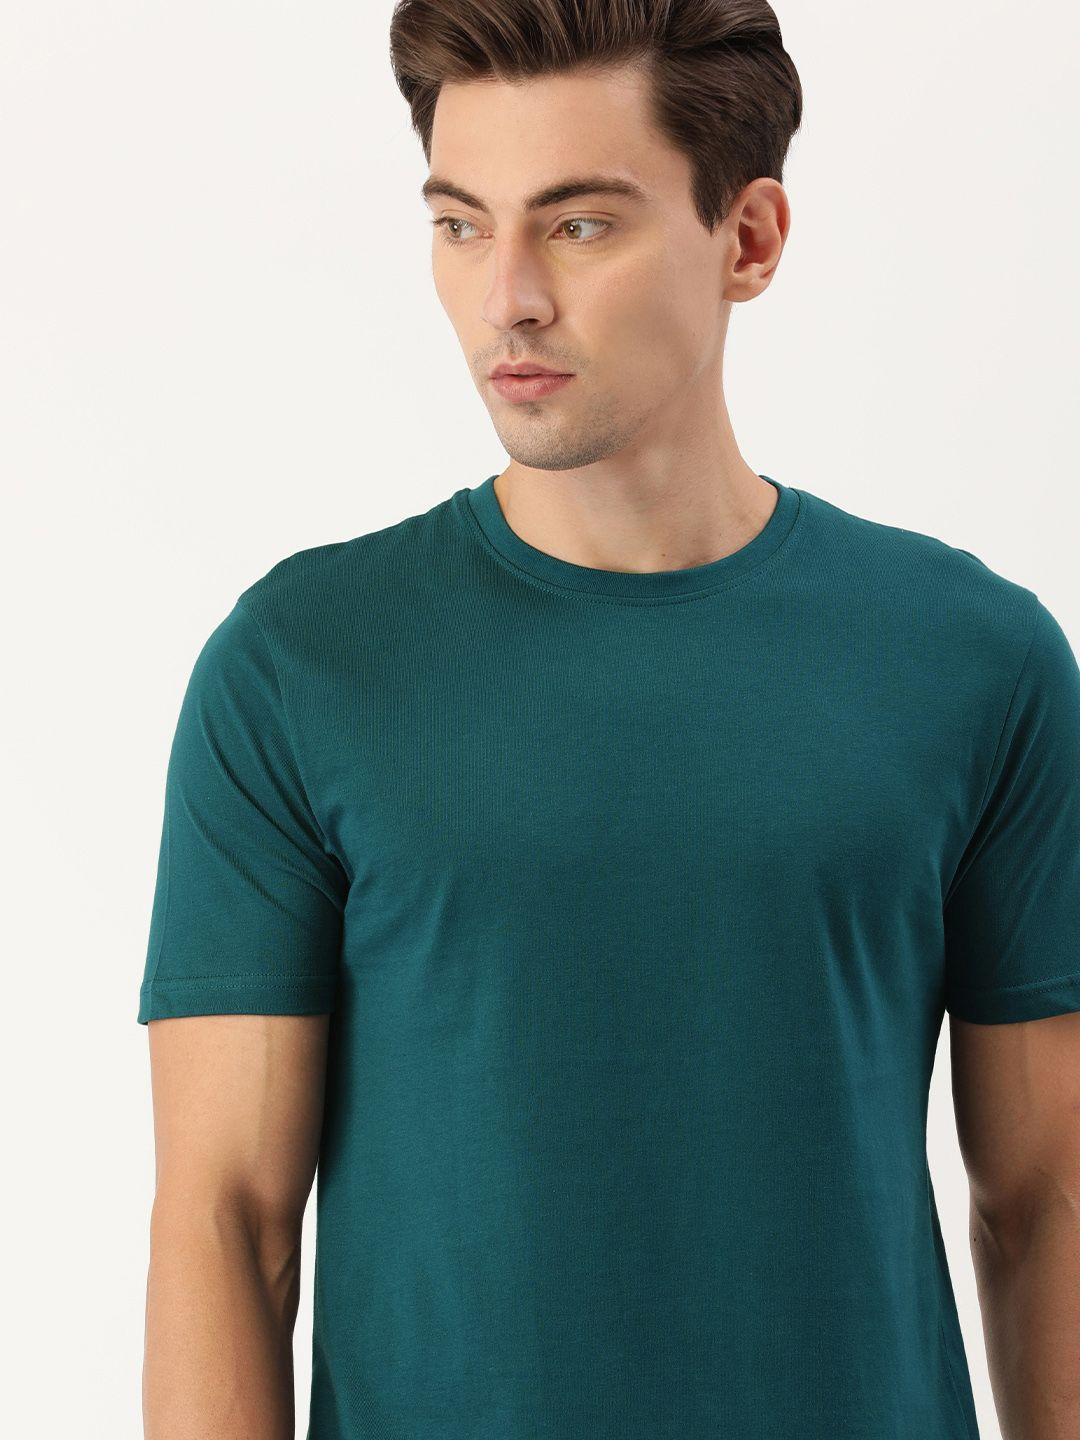 ivoc-men-teal-green-round-neck-cotton-t-shirt